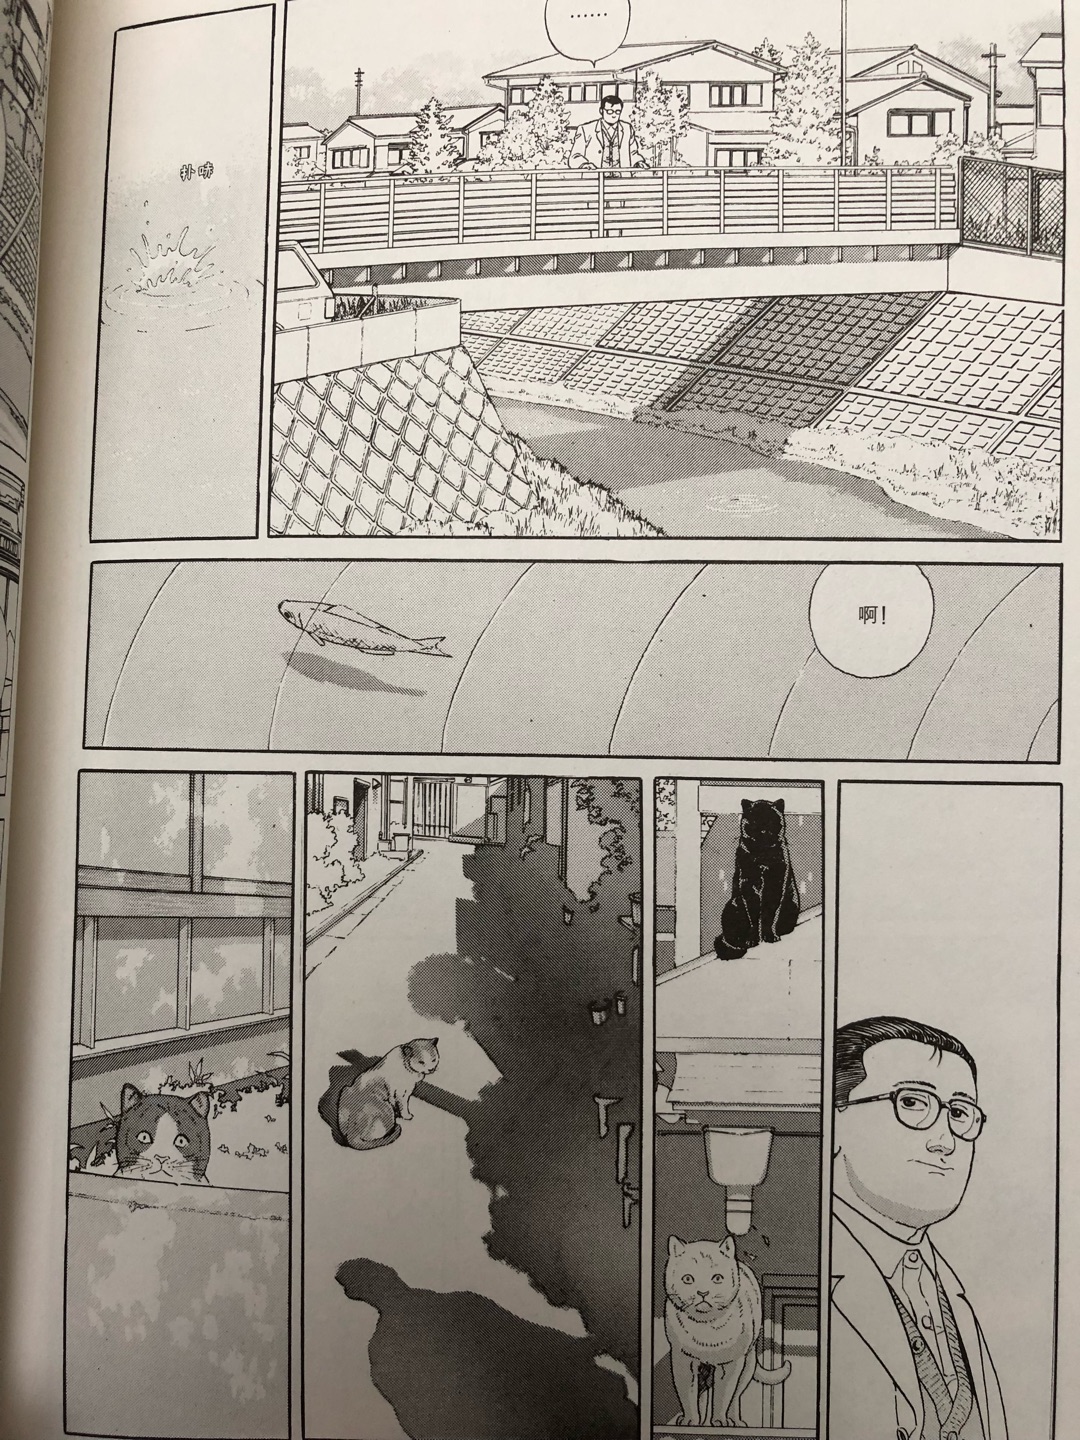 谷口治郎的成人漫画还是很好看的，自营快捷方便，包装的四角尖尖。。。